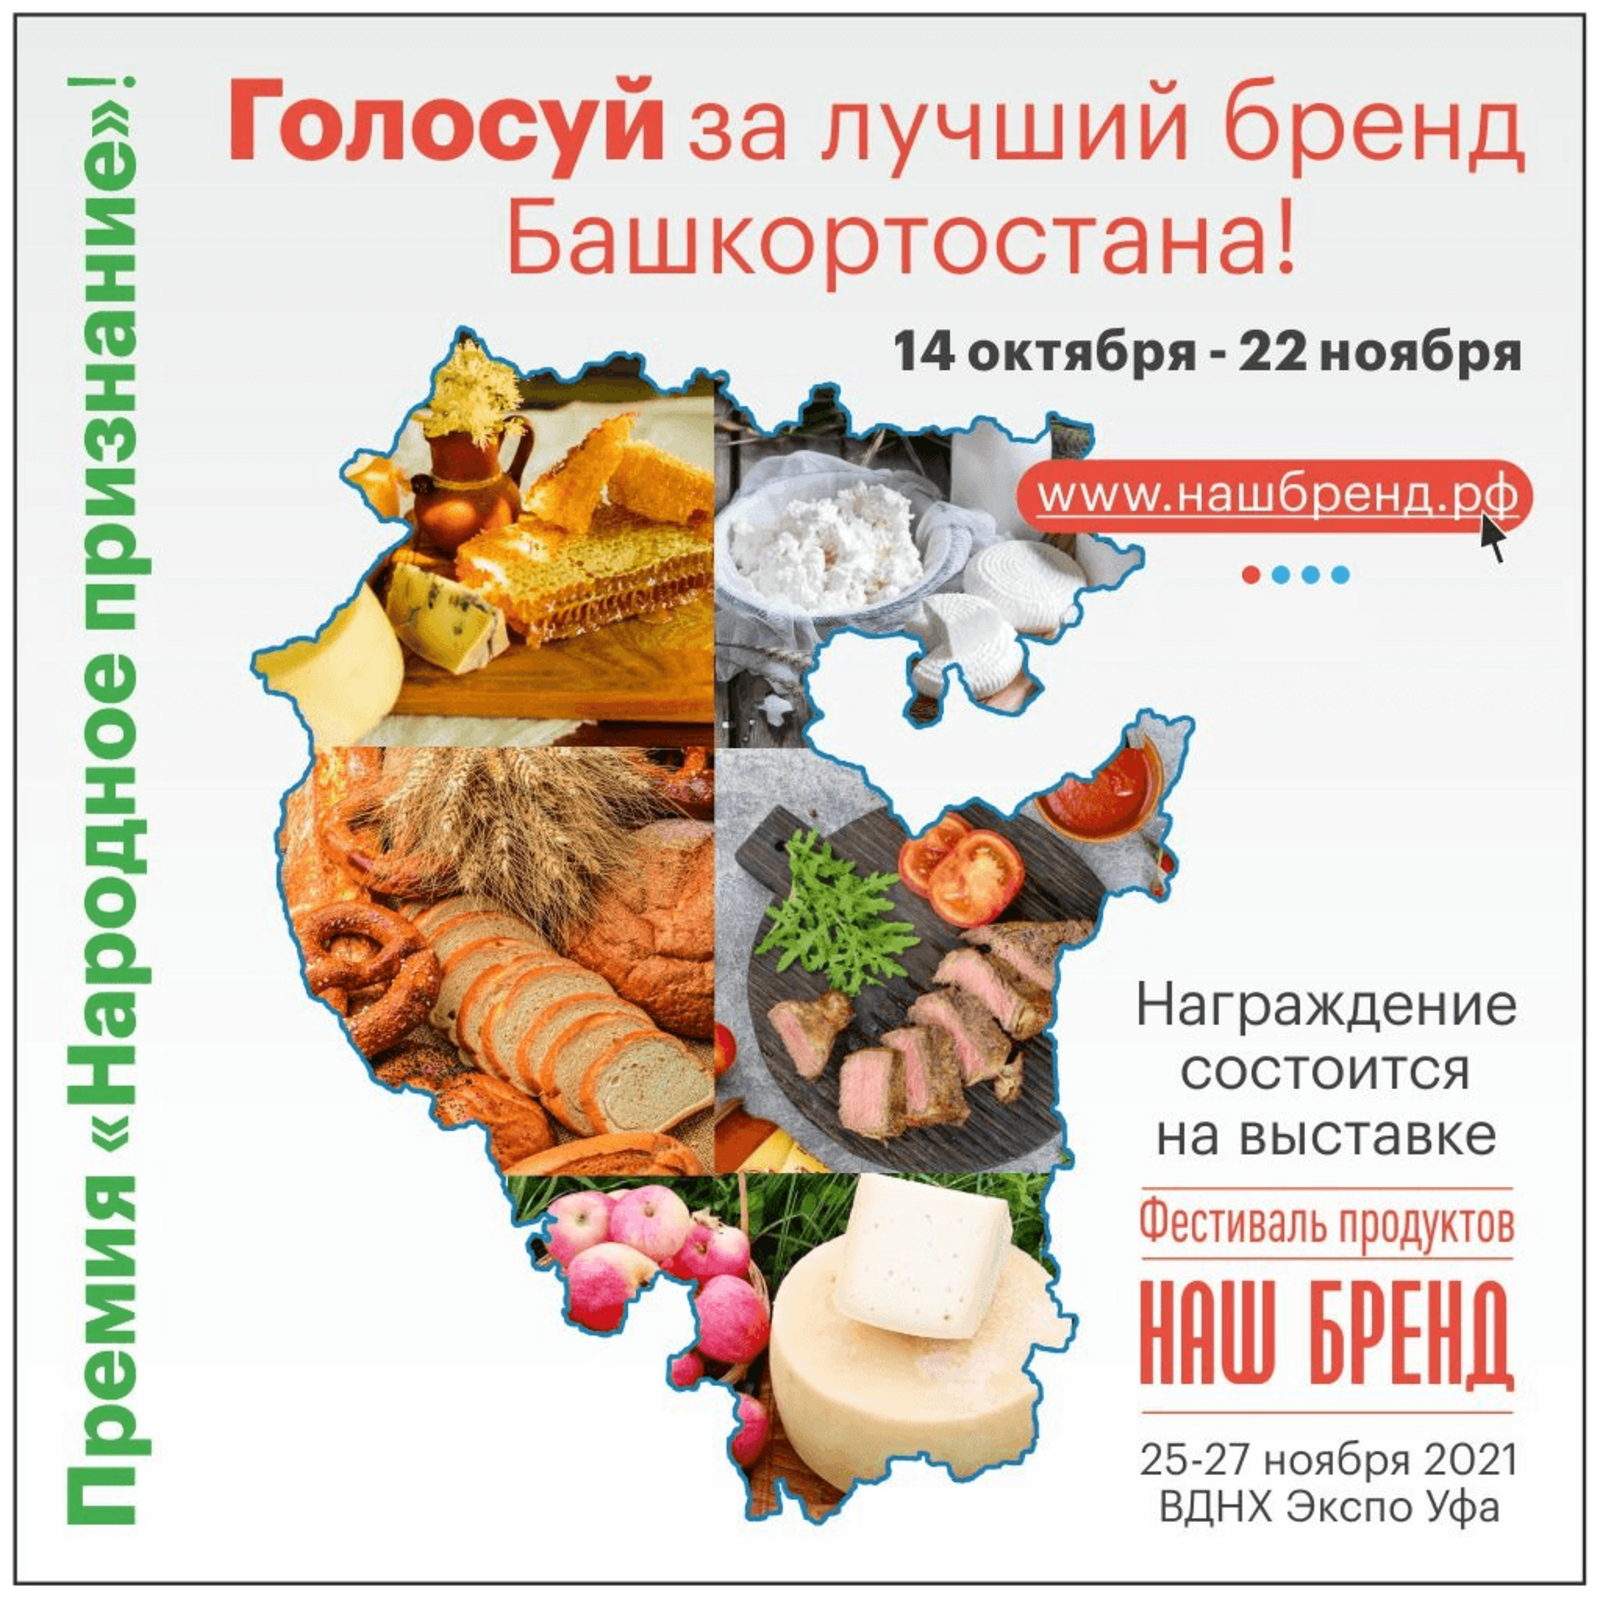 В Башкортостане стартовал региональный конкурс продуктов питания «Наш Бренд. Народное признание»